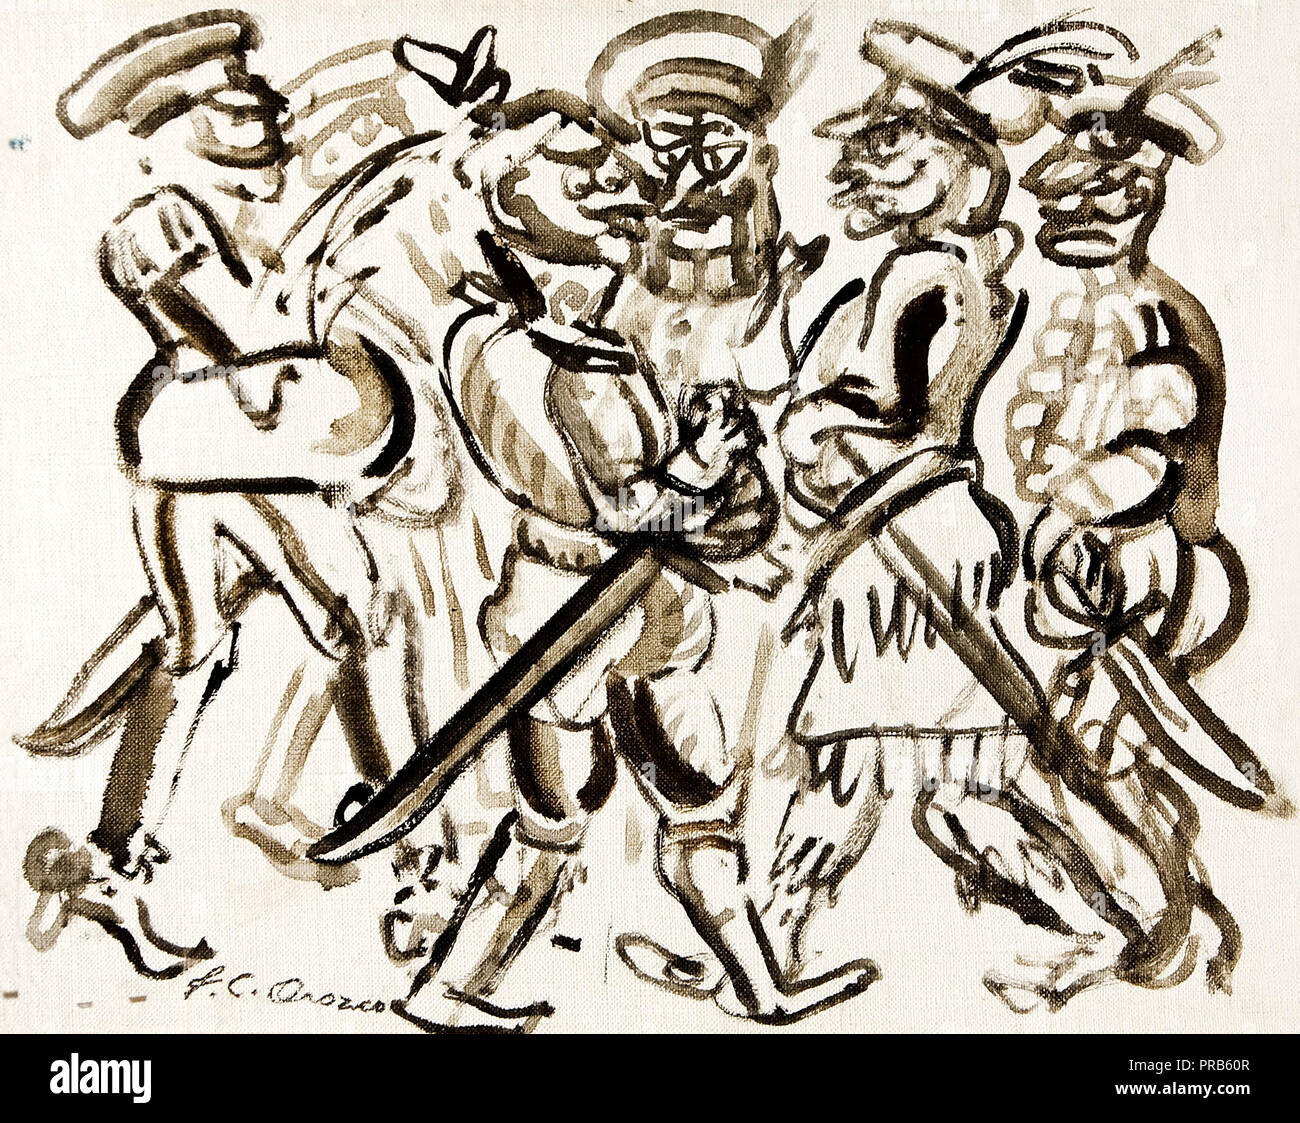 Jose Clemente Orozco, Sindaco Membro di Buffoons 1946 olio su tela, museo di arte sudamericana. Foto Stock